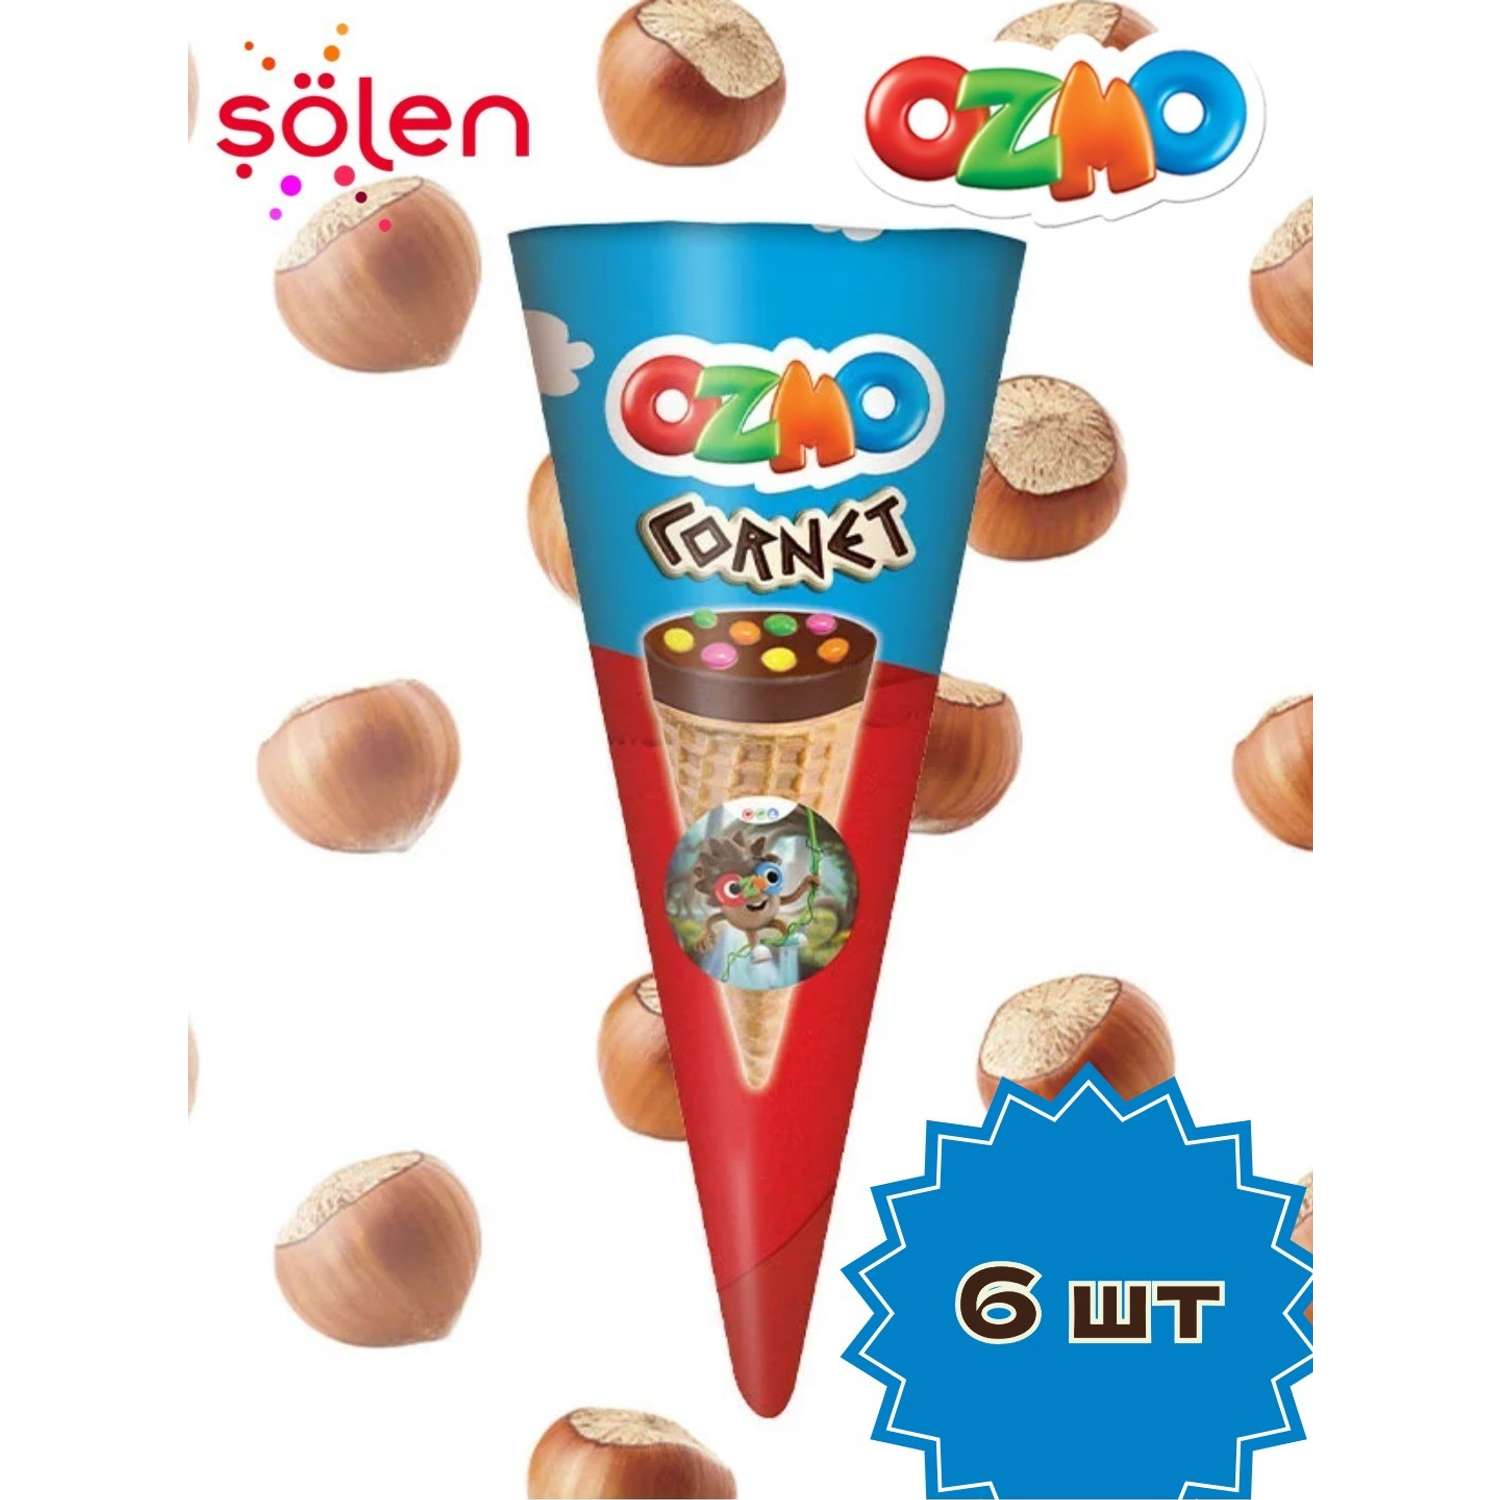 Рожок Solen Ozmo Cornet с кремом из фундука с молочным шоколадом и конфетами-драже 8 шт. - фото 1